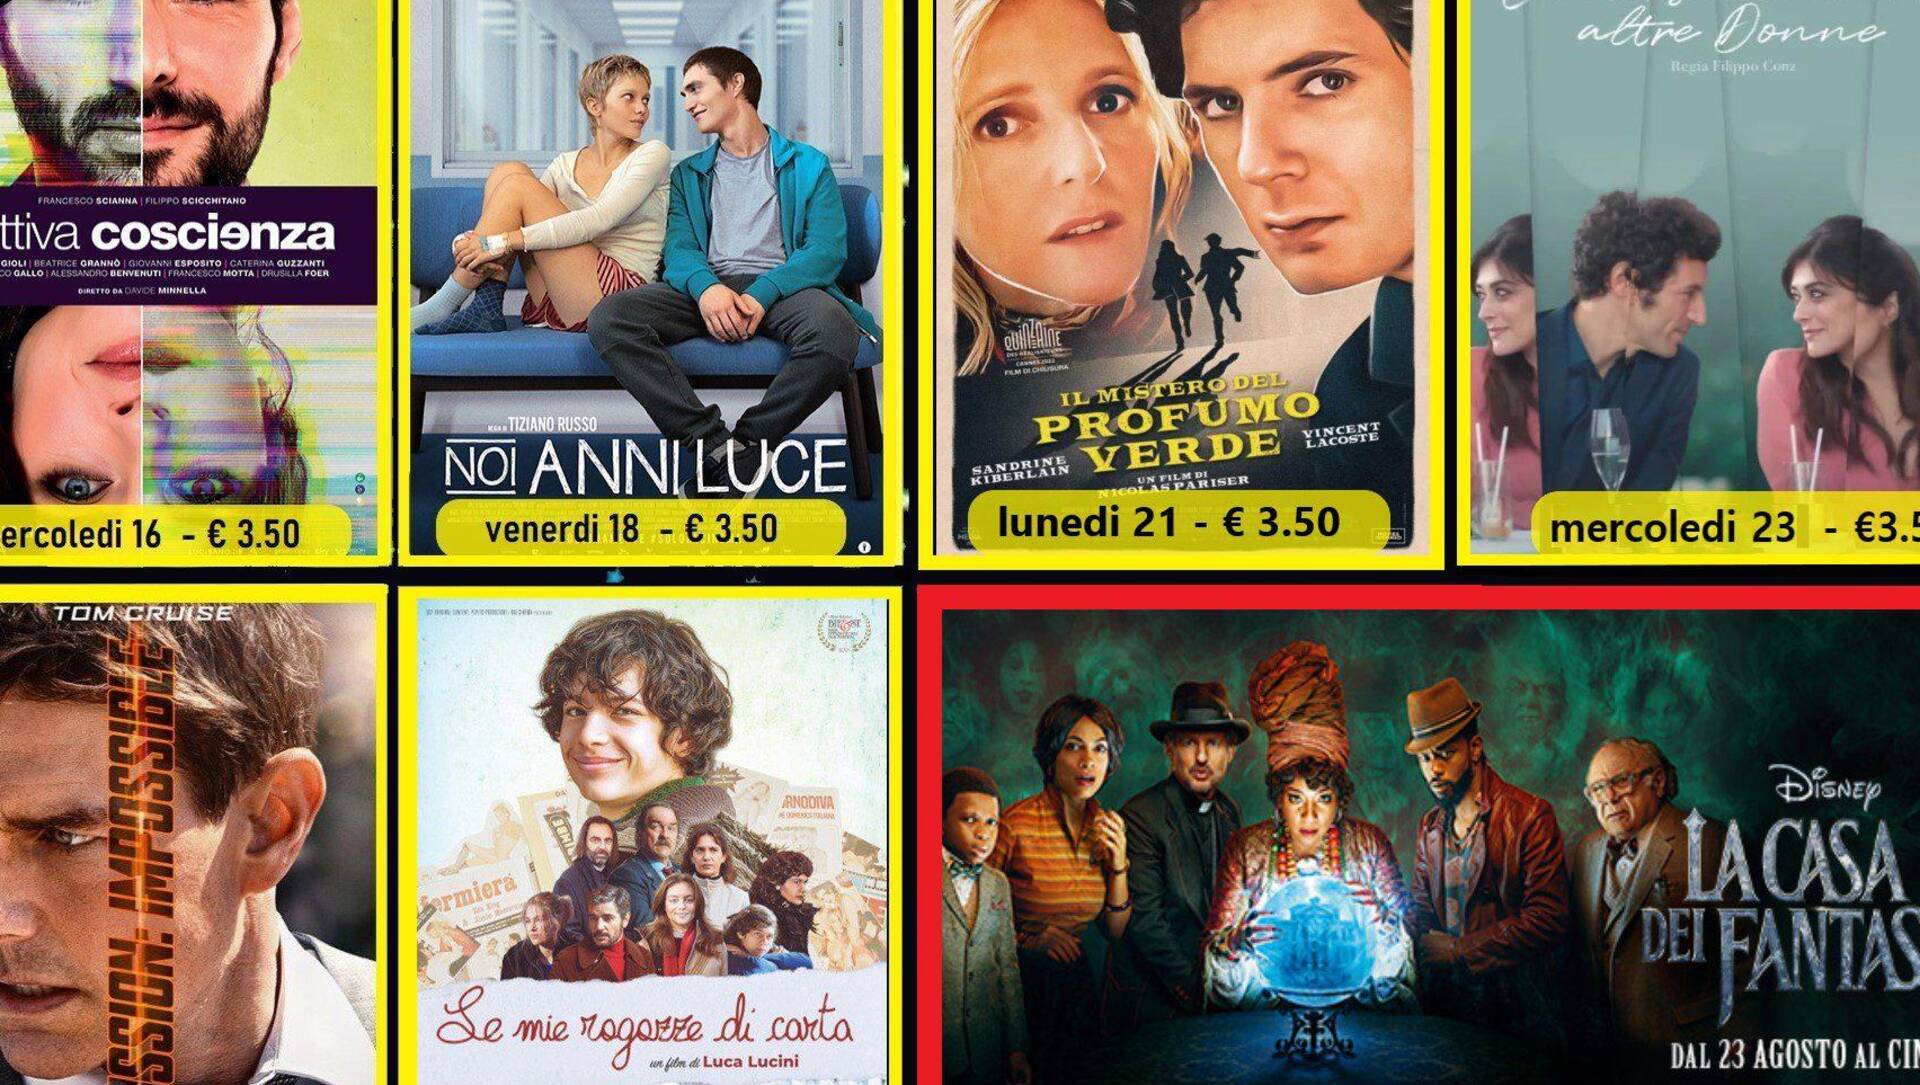 Riapre il Nuovo Cinema Prealpi e al Cinema Sotto le Stelle vedi i film europei a soli 3.50